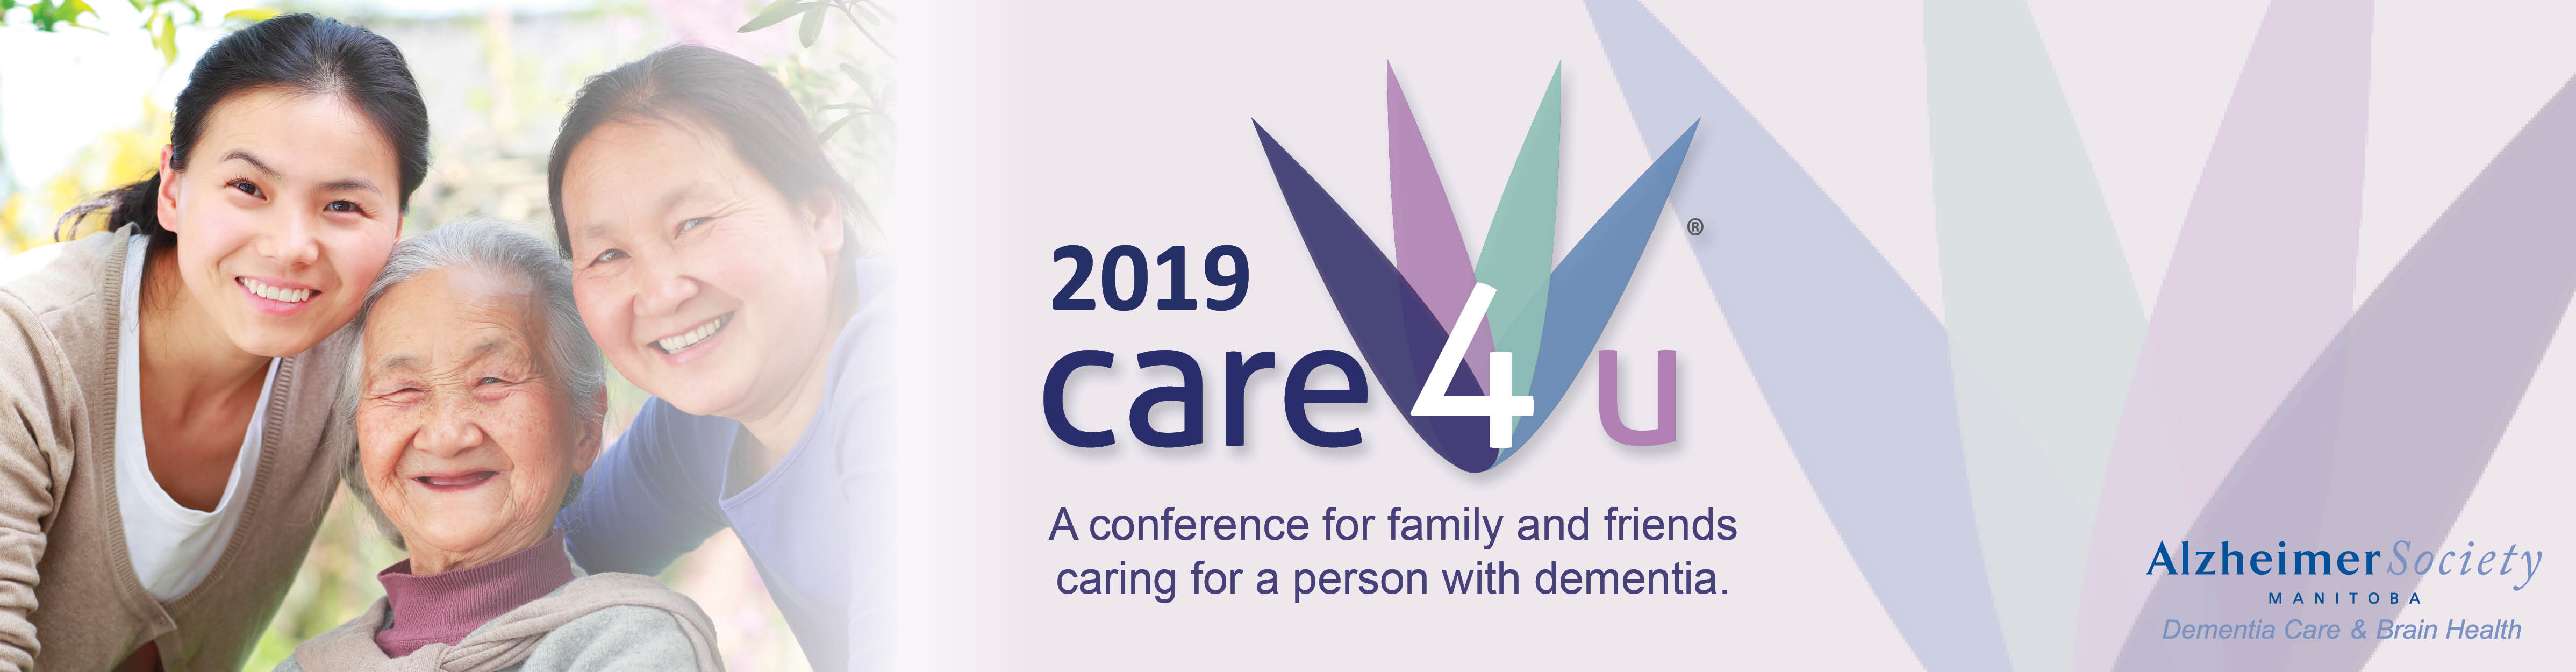 Care4u 2019 header